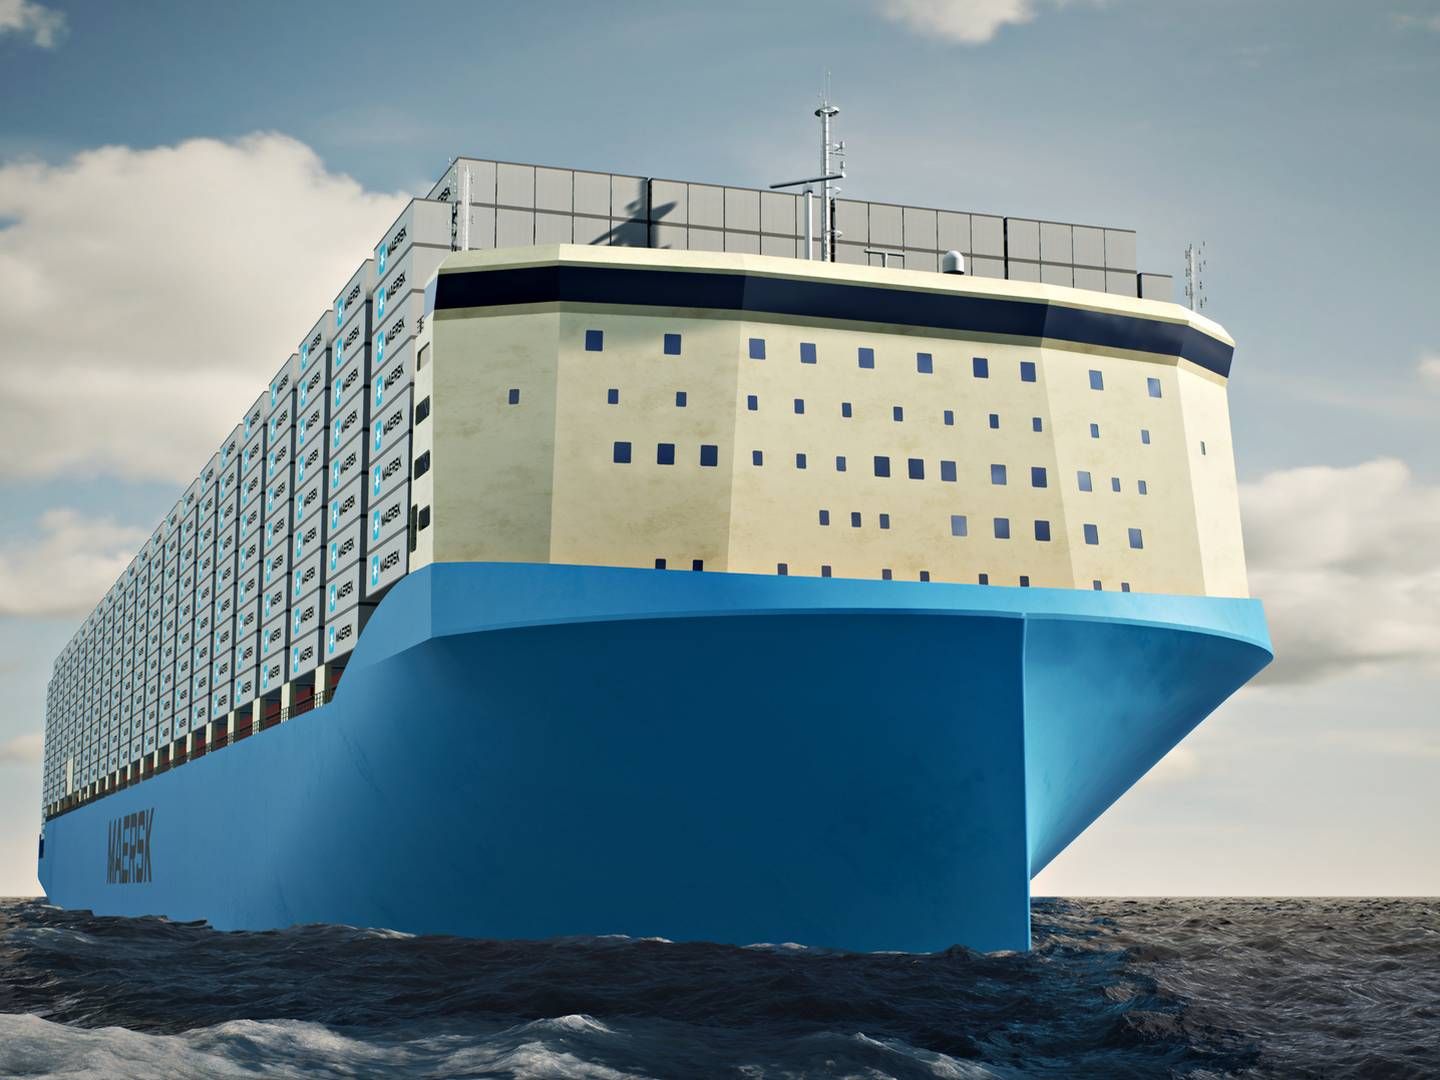 Internt i Maersk kaldes det nye skibsdesign for den største nytænkning siden Maersk lancerede triple E-skibene med en kapacitet på 18.000 teu i 2013. | Foto: Maersk